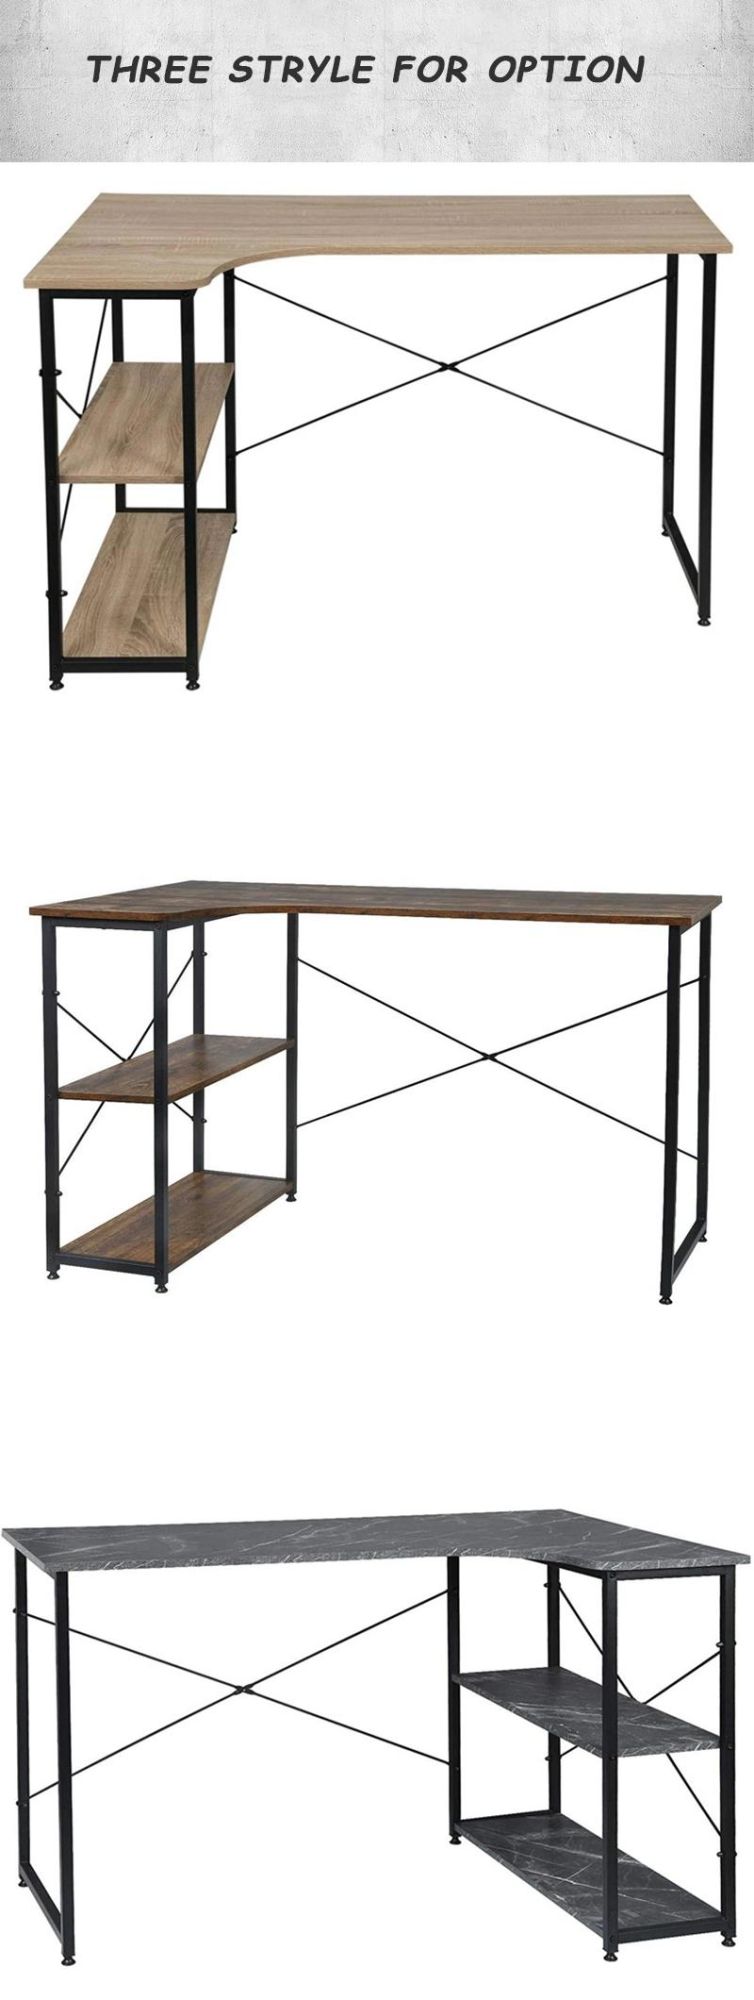 Adjustable Design Work Furniture Modern Home Table Computer Office Desk for Living Room